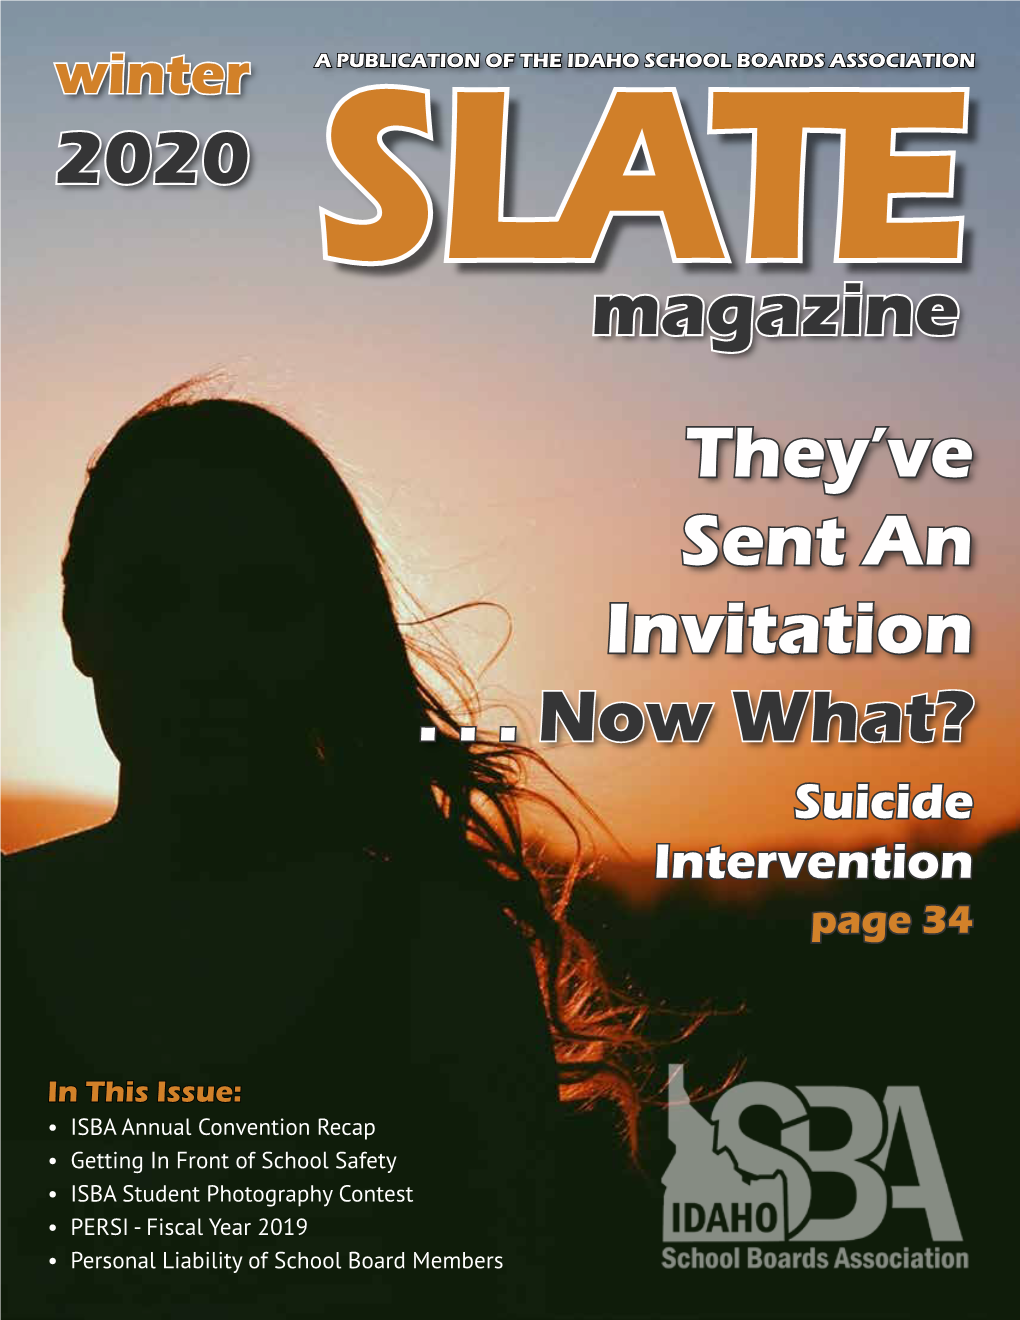 2020 LATES Magazine